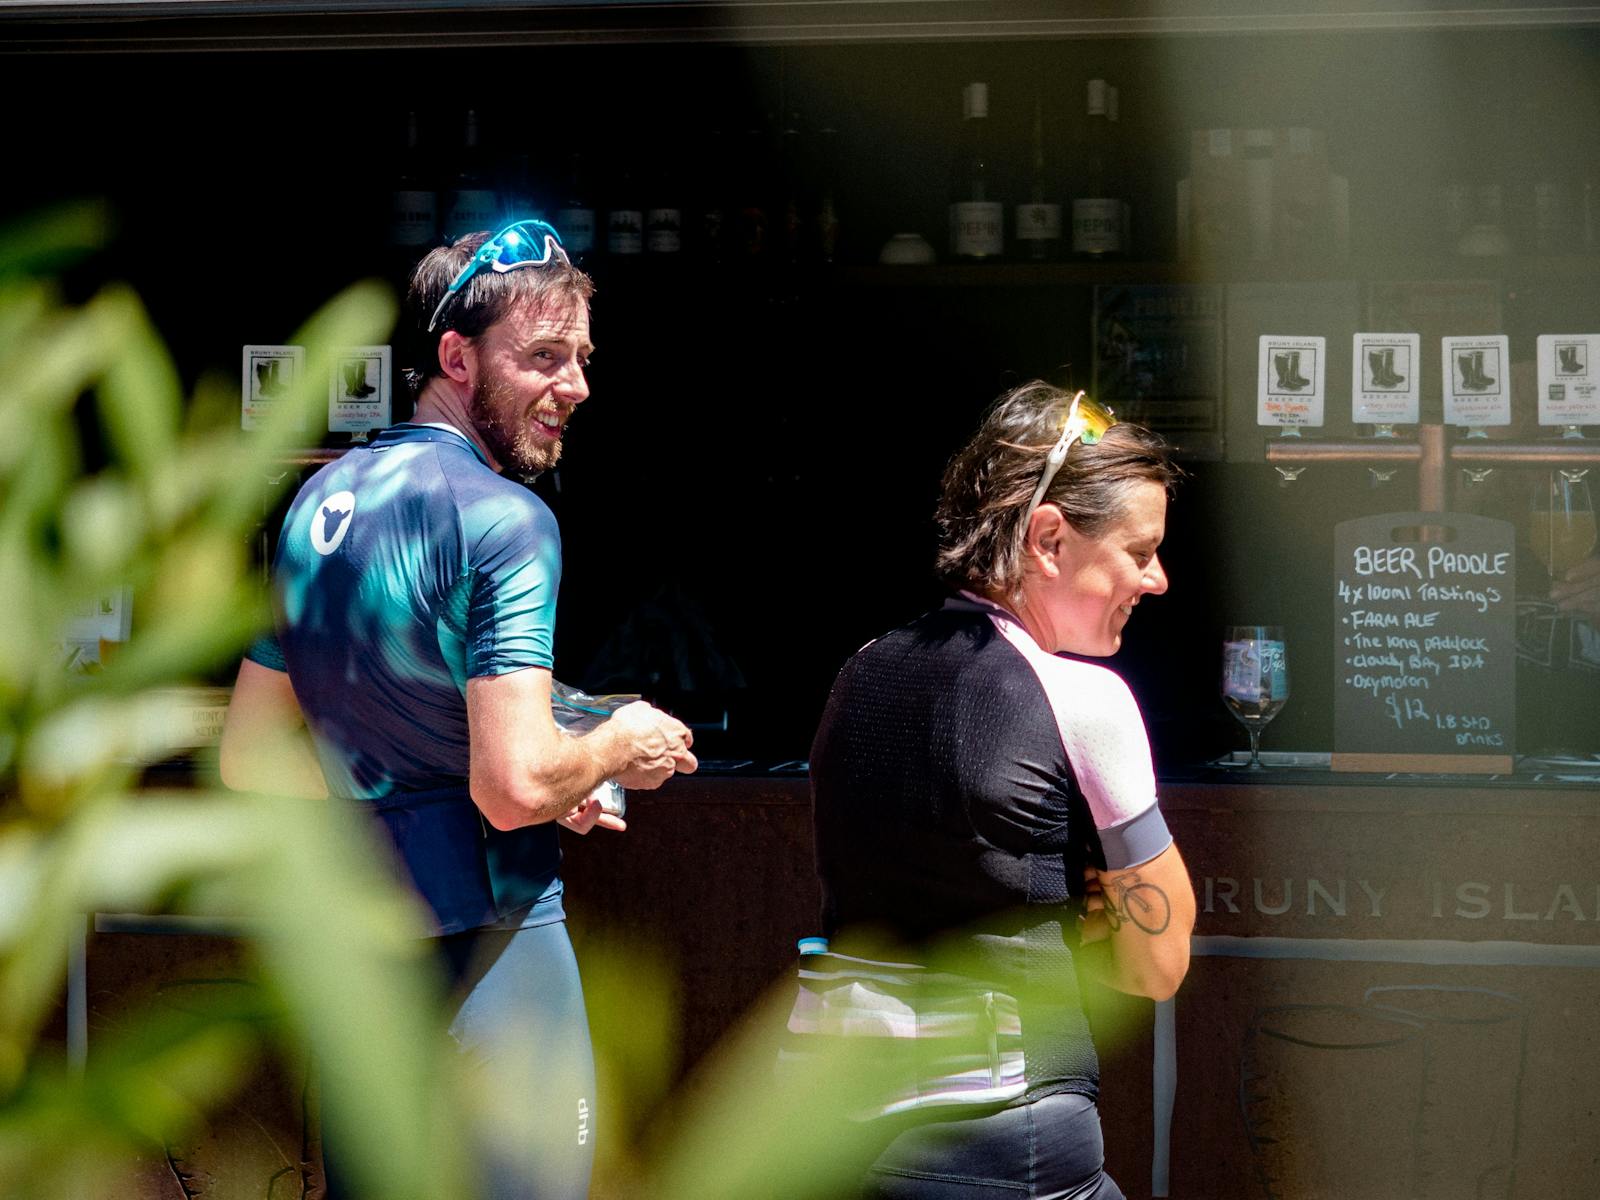 2 cyclists choosing local Bruny Island beer